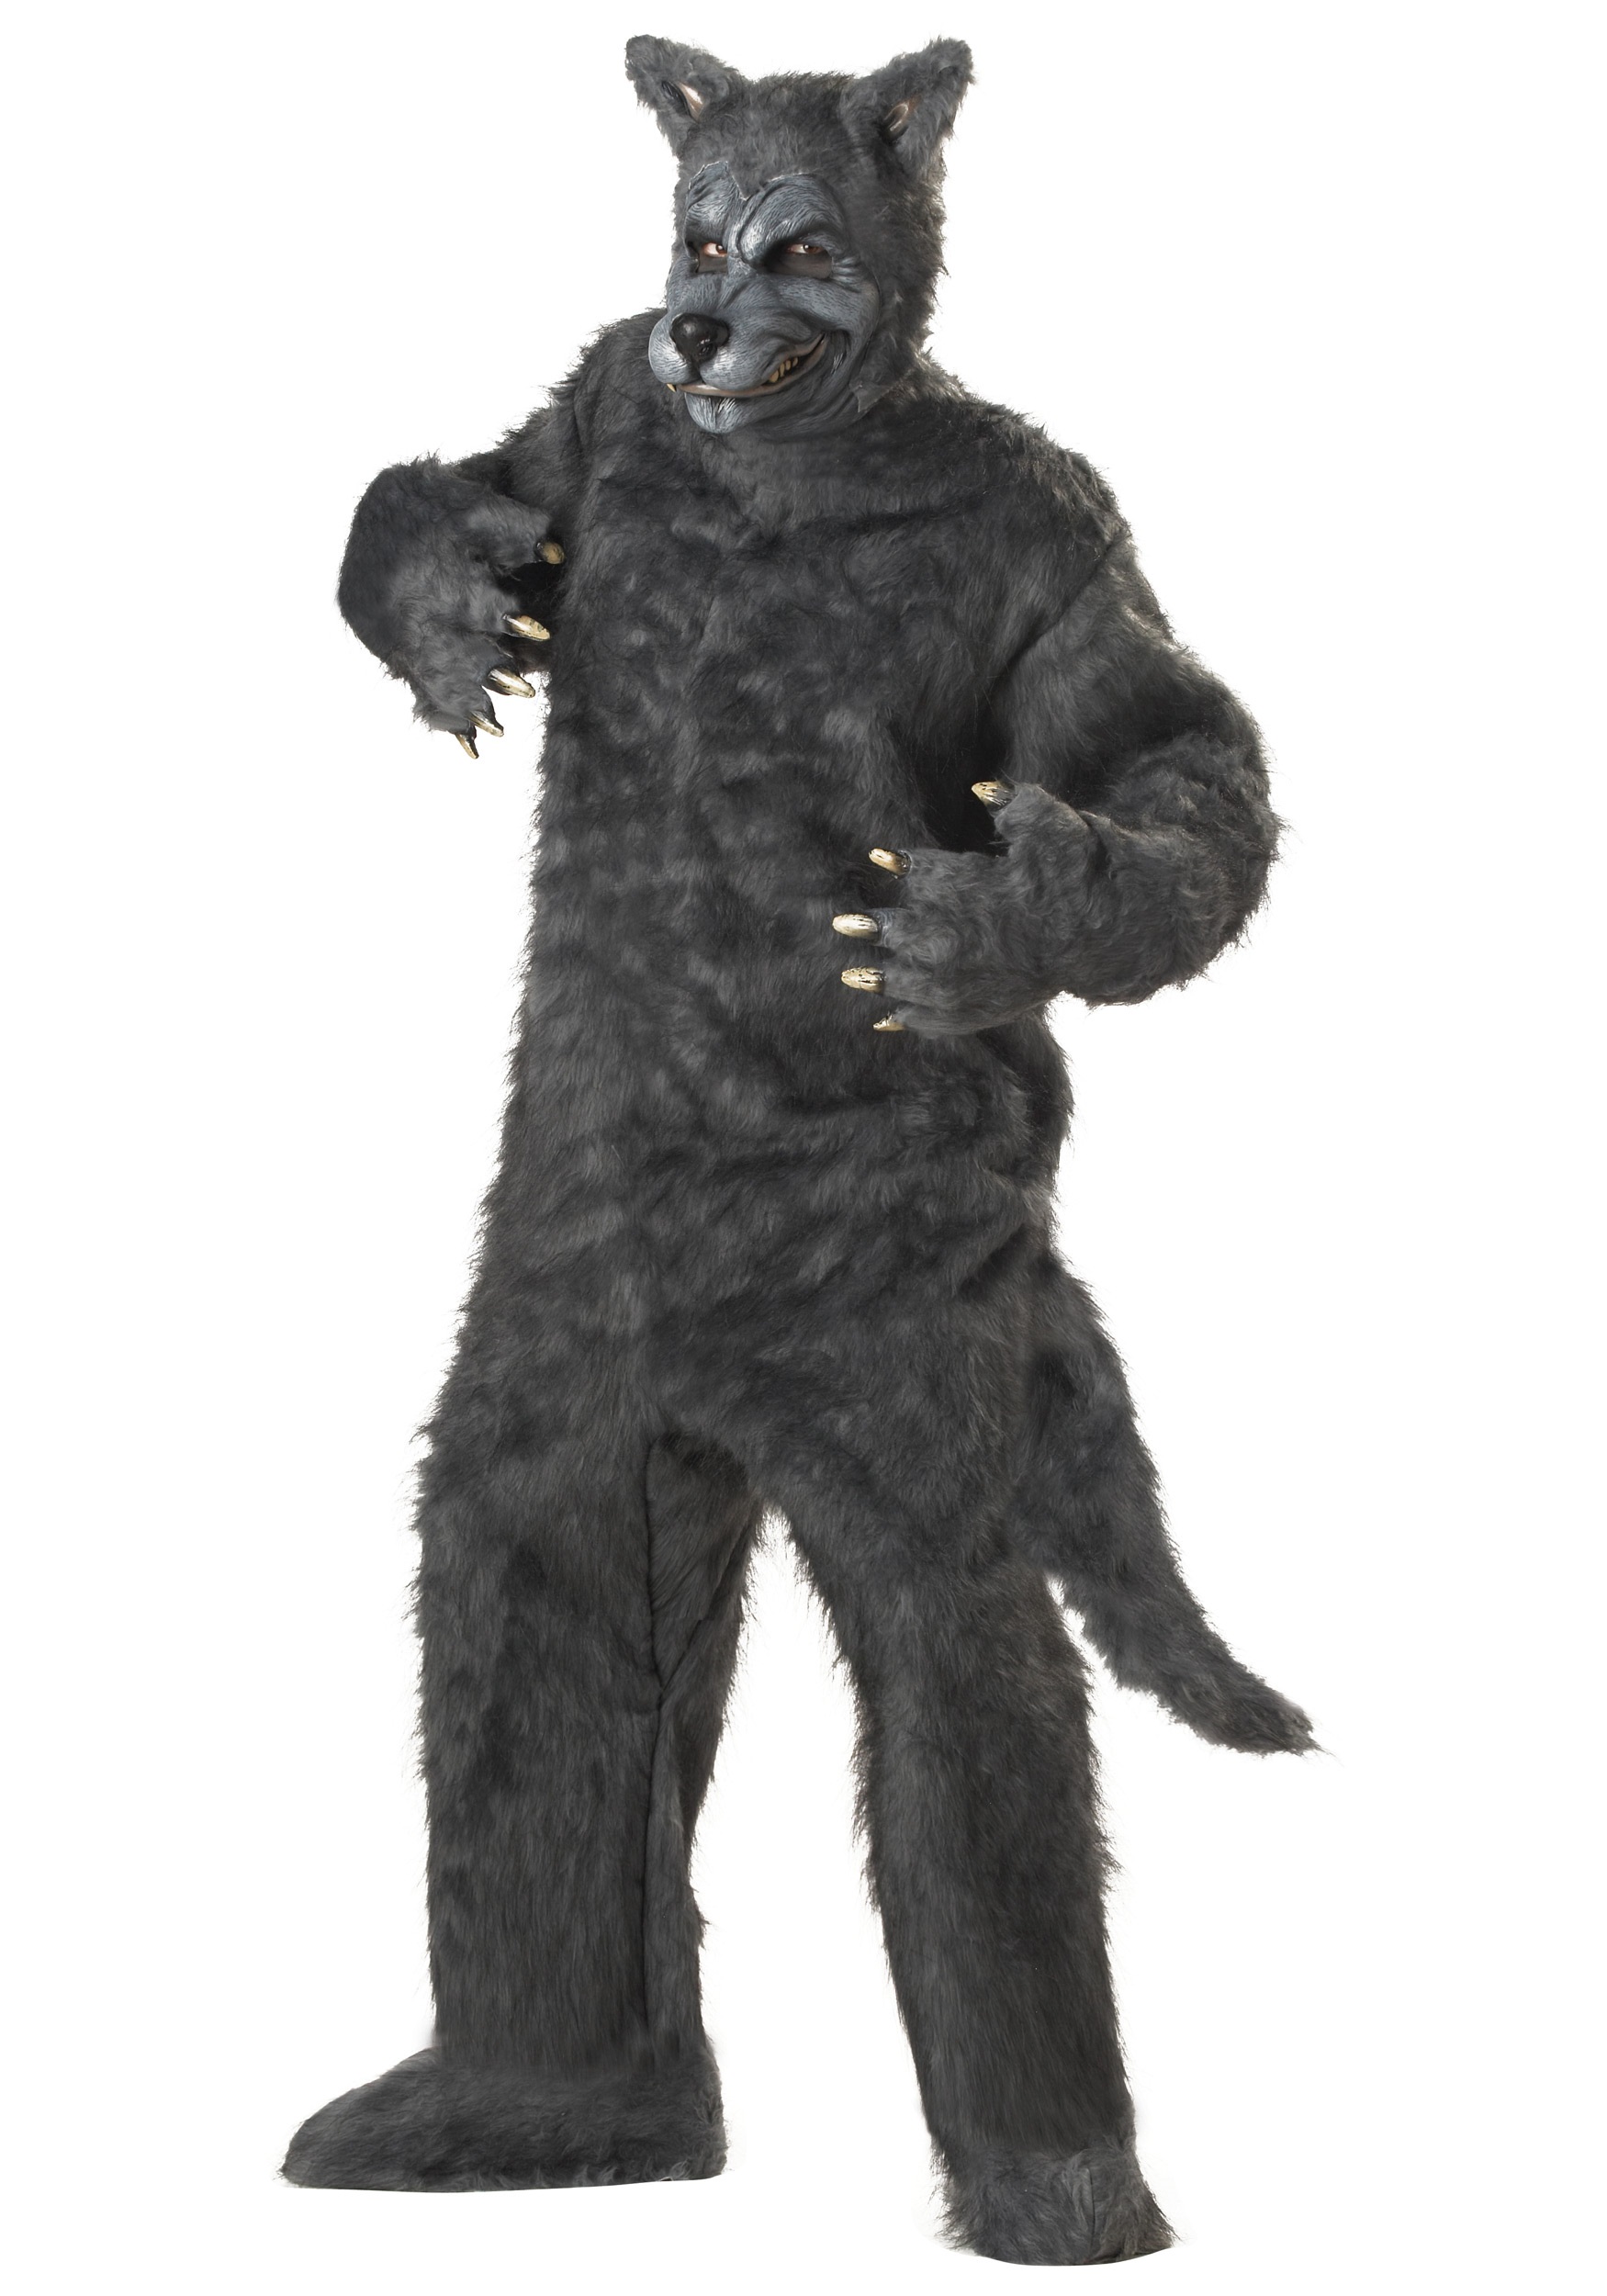 Plus Big Bad Wolf Costume - Halloween Costume Ideas 2022.